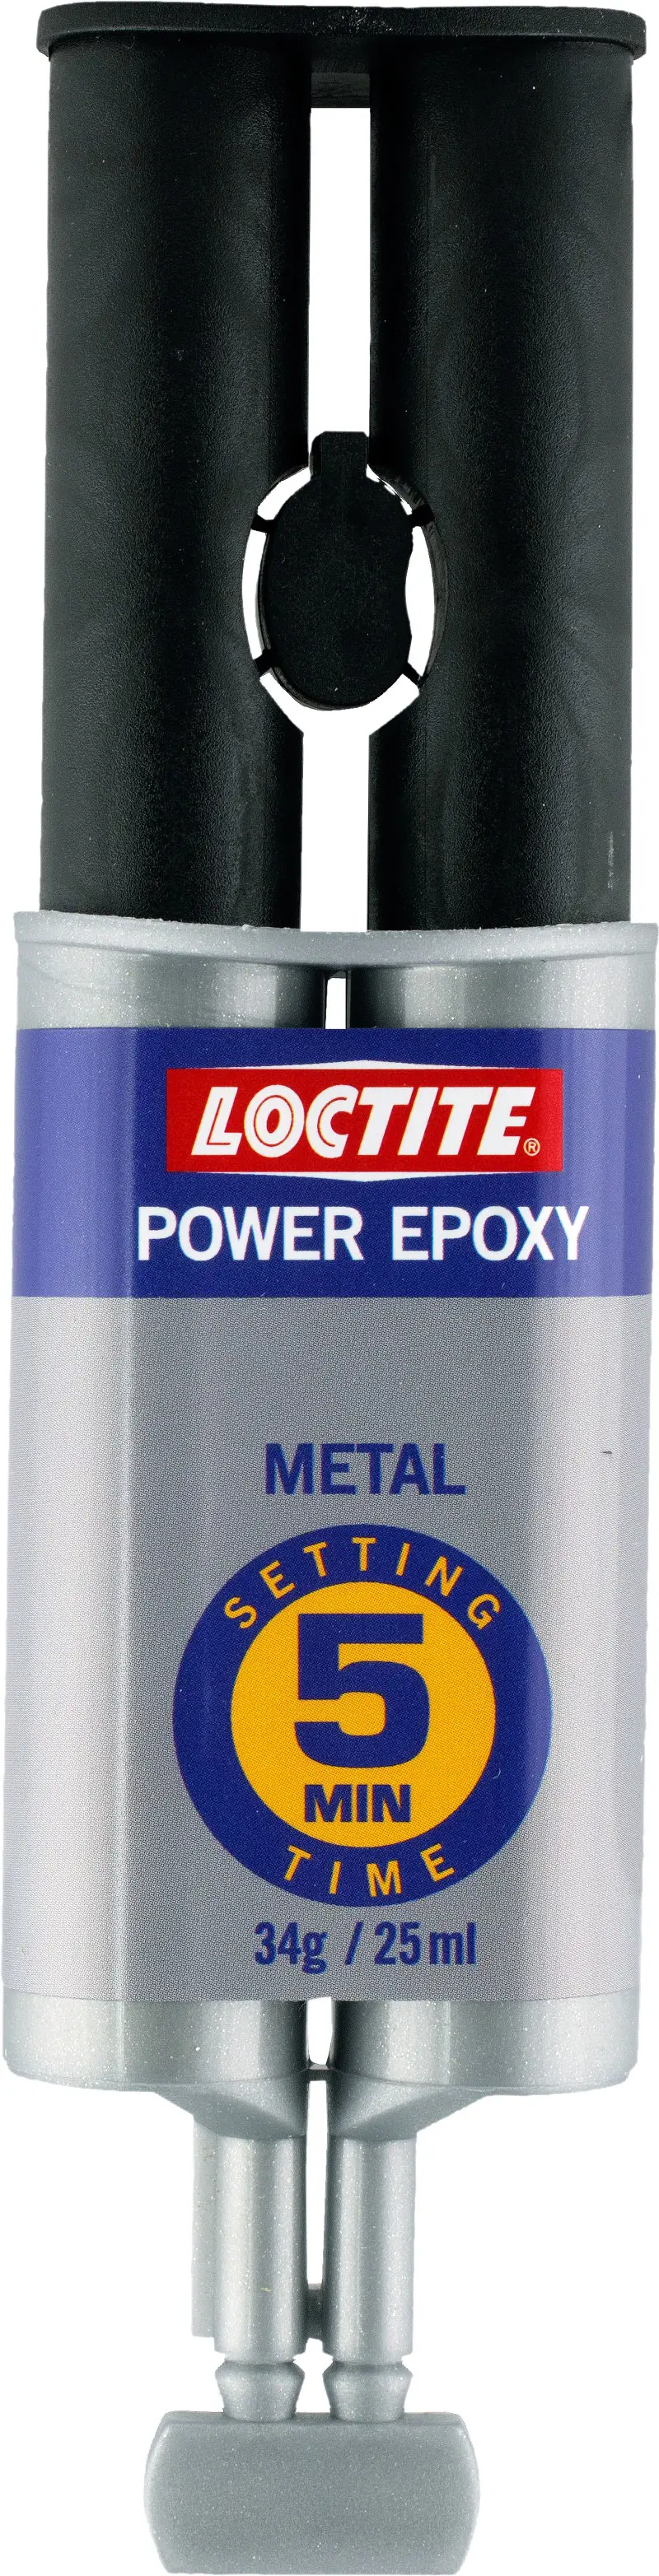 Loctite Superstål/Power epoxy Metal